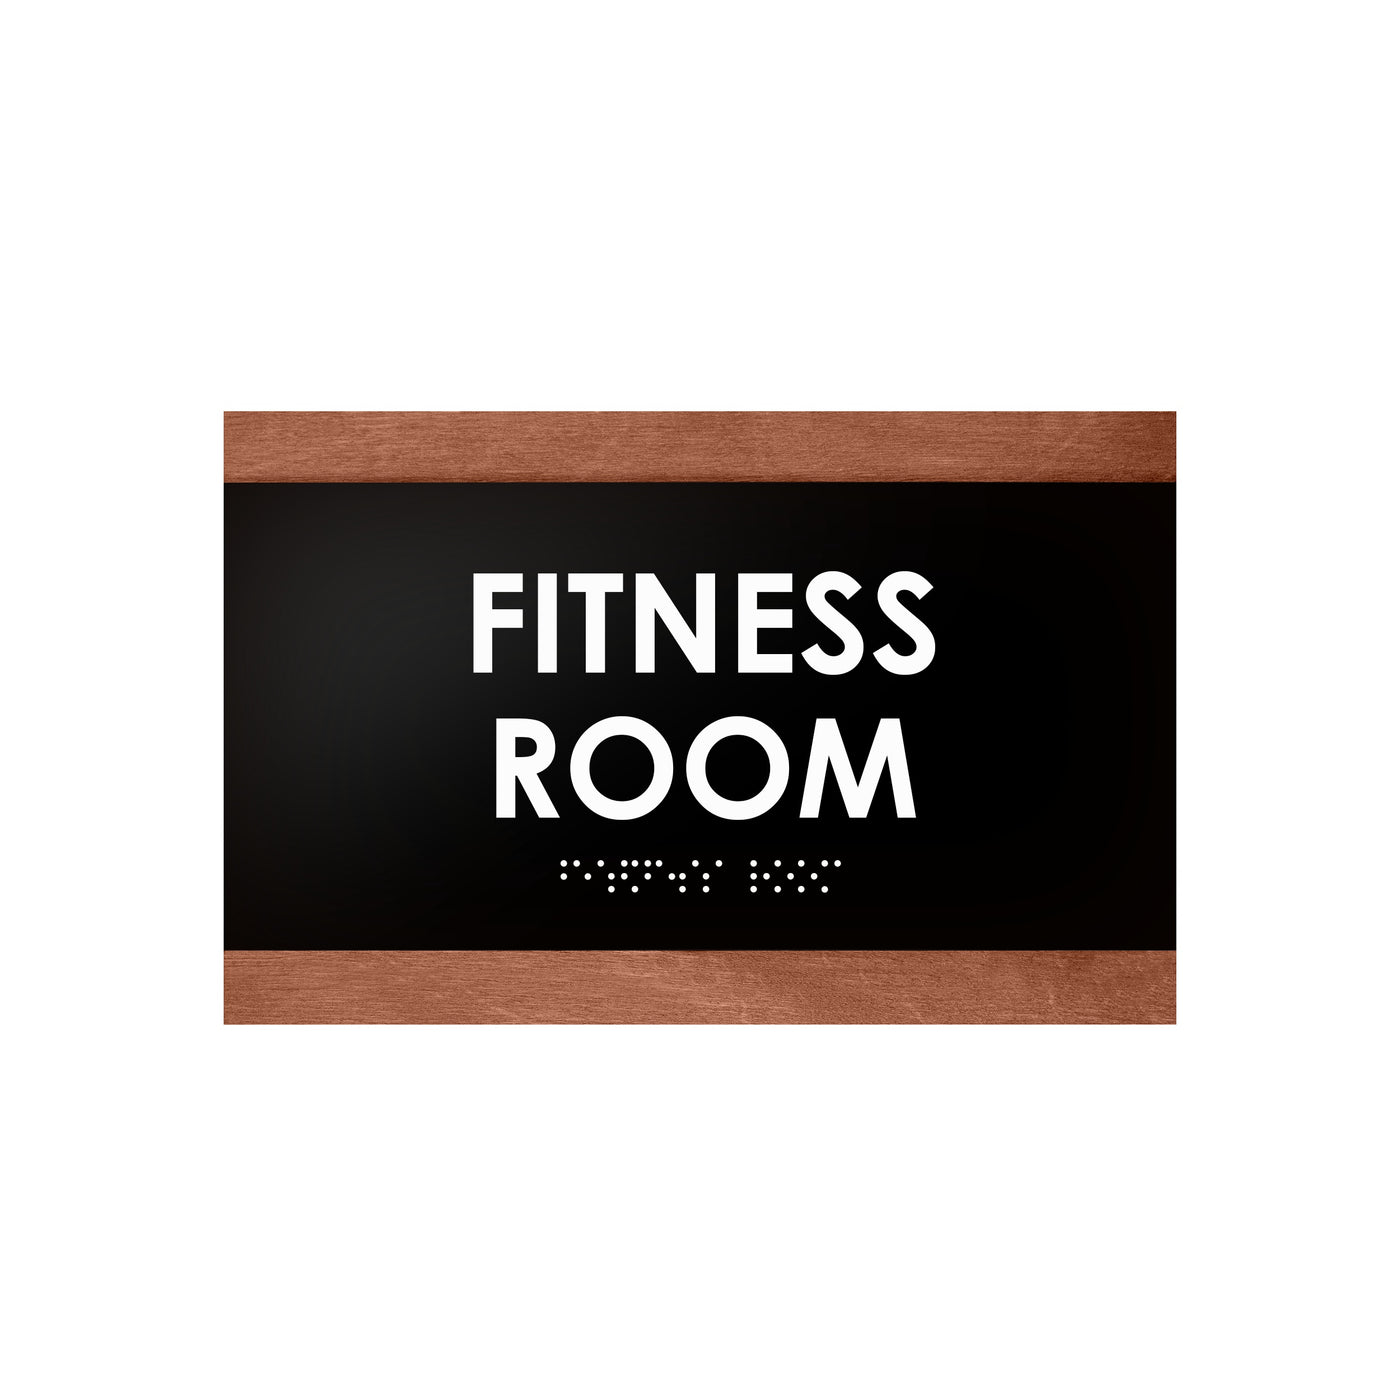 Door Signs - Fitness Room Wood Door Sign "Buro" Design